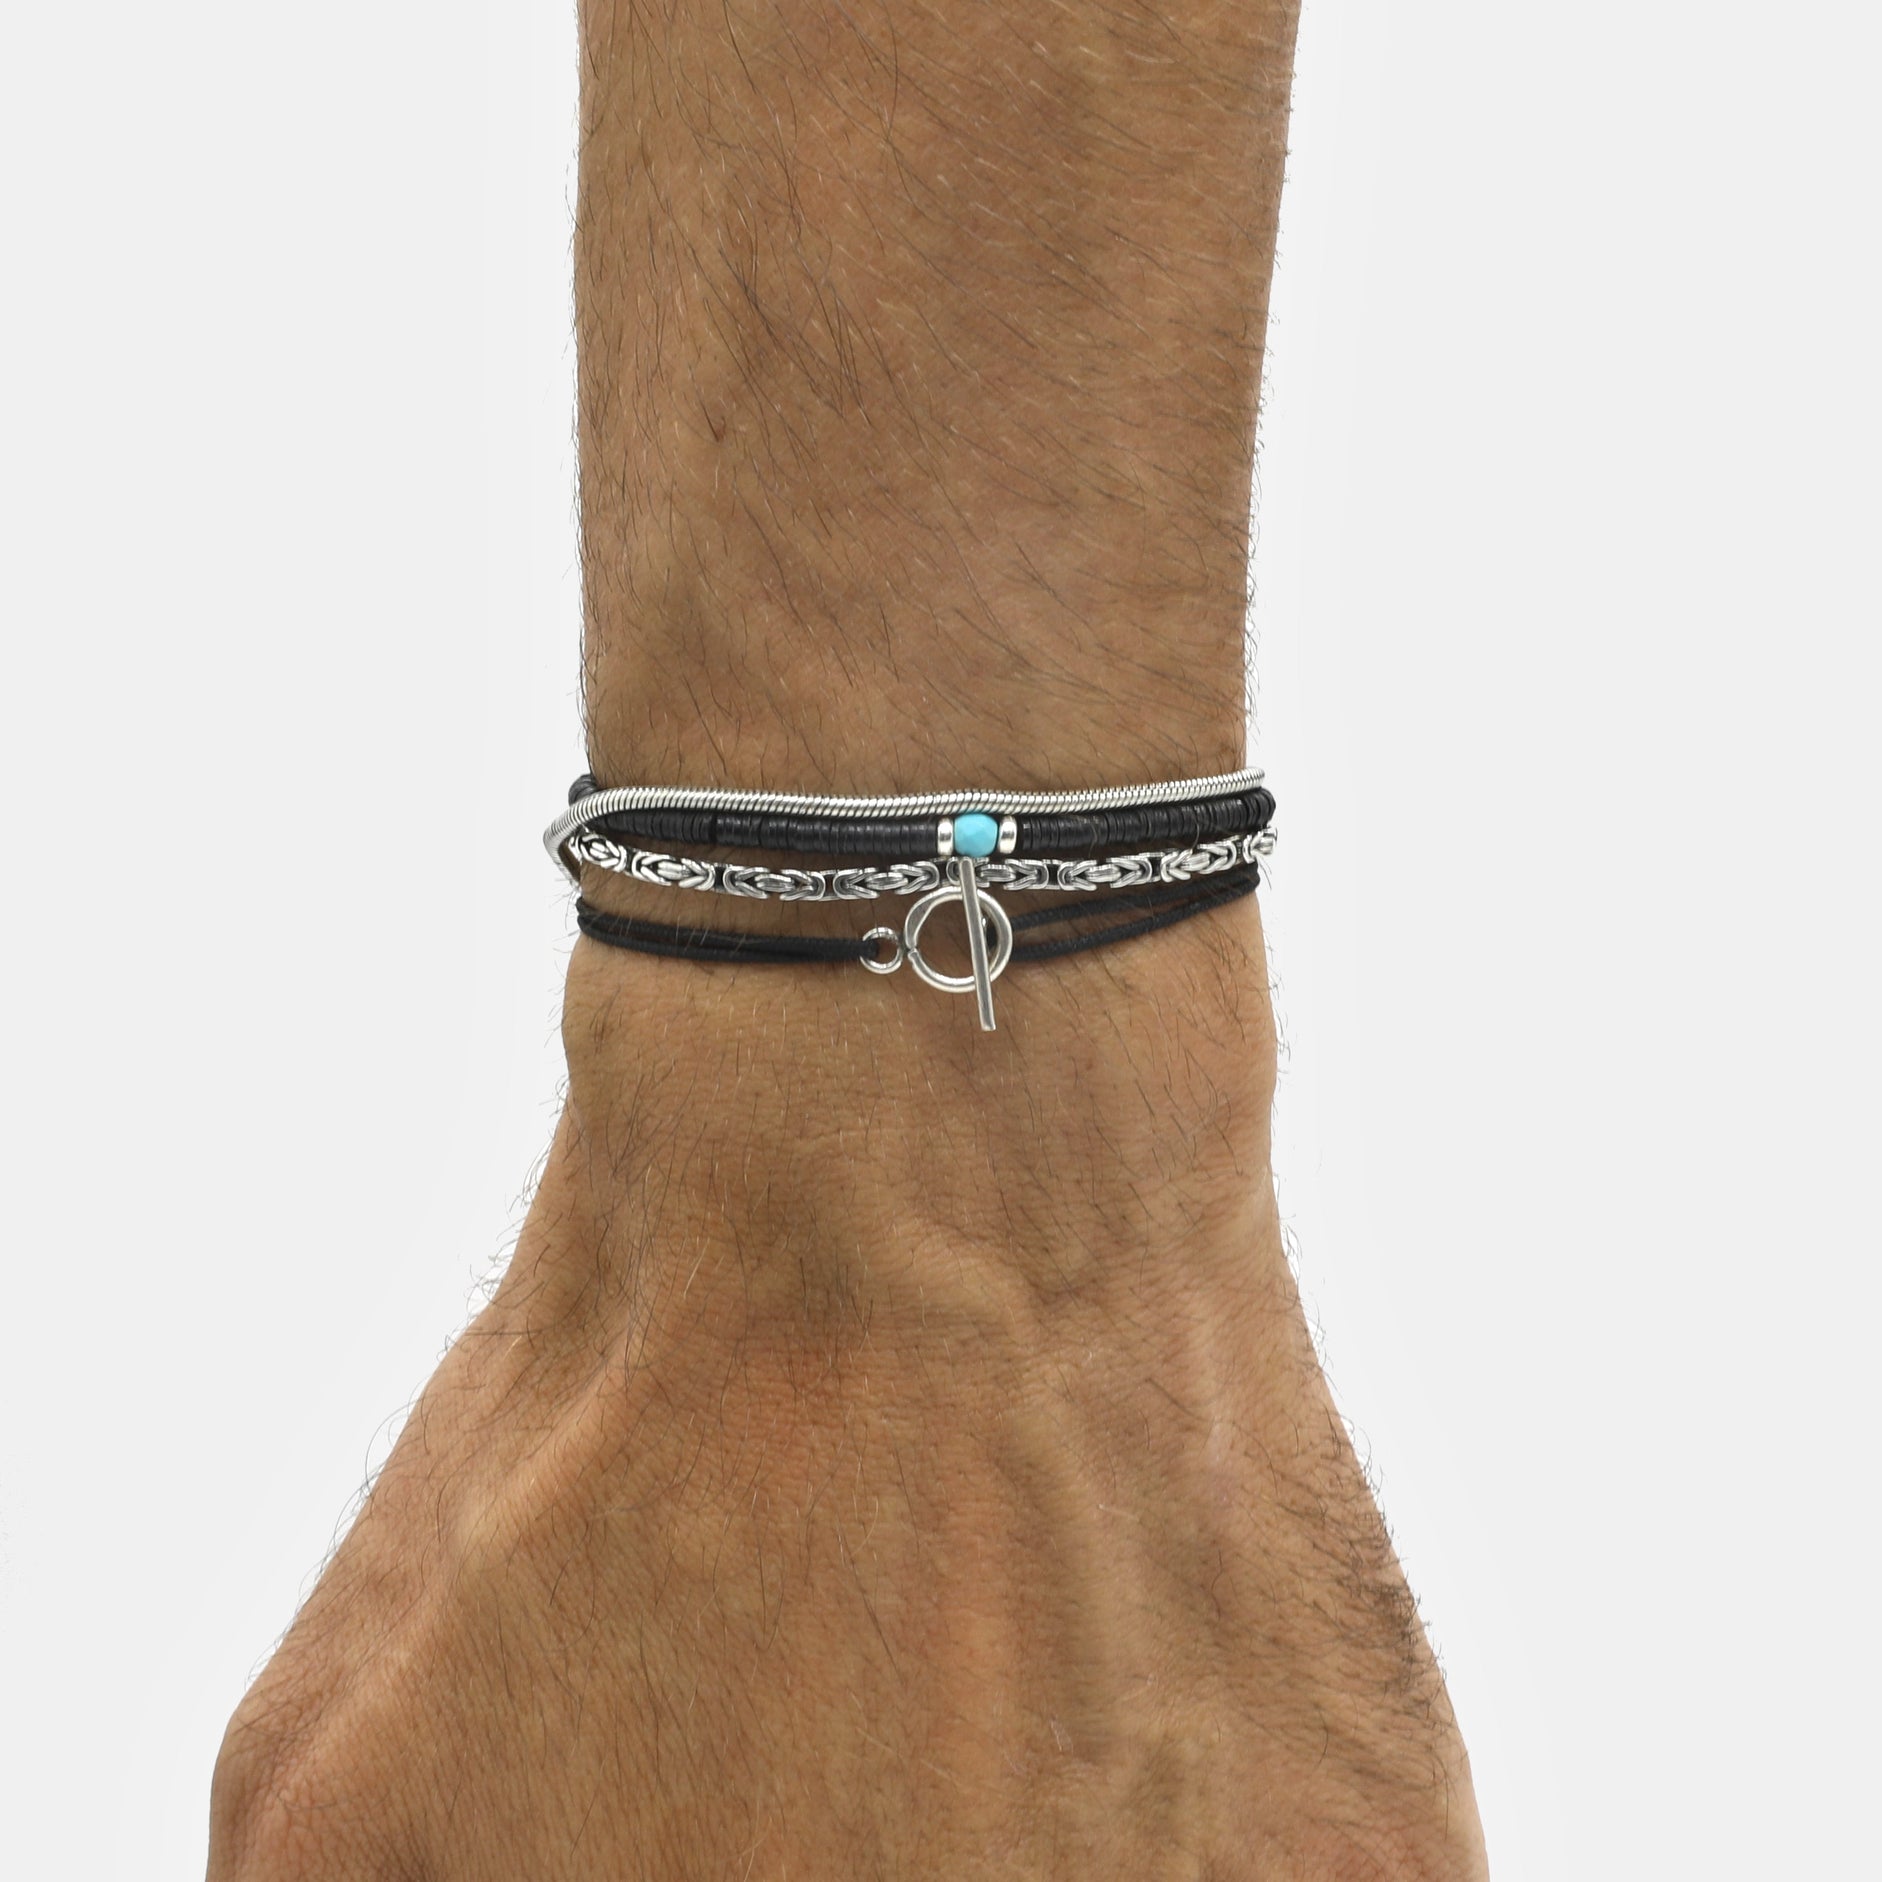 Cord Bracelet With Sterling Silver Toggle (Black)-Kompsós